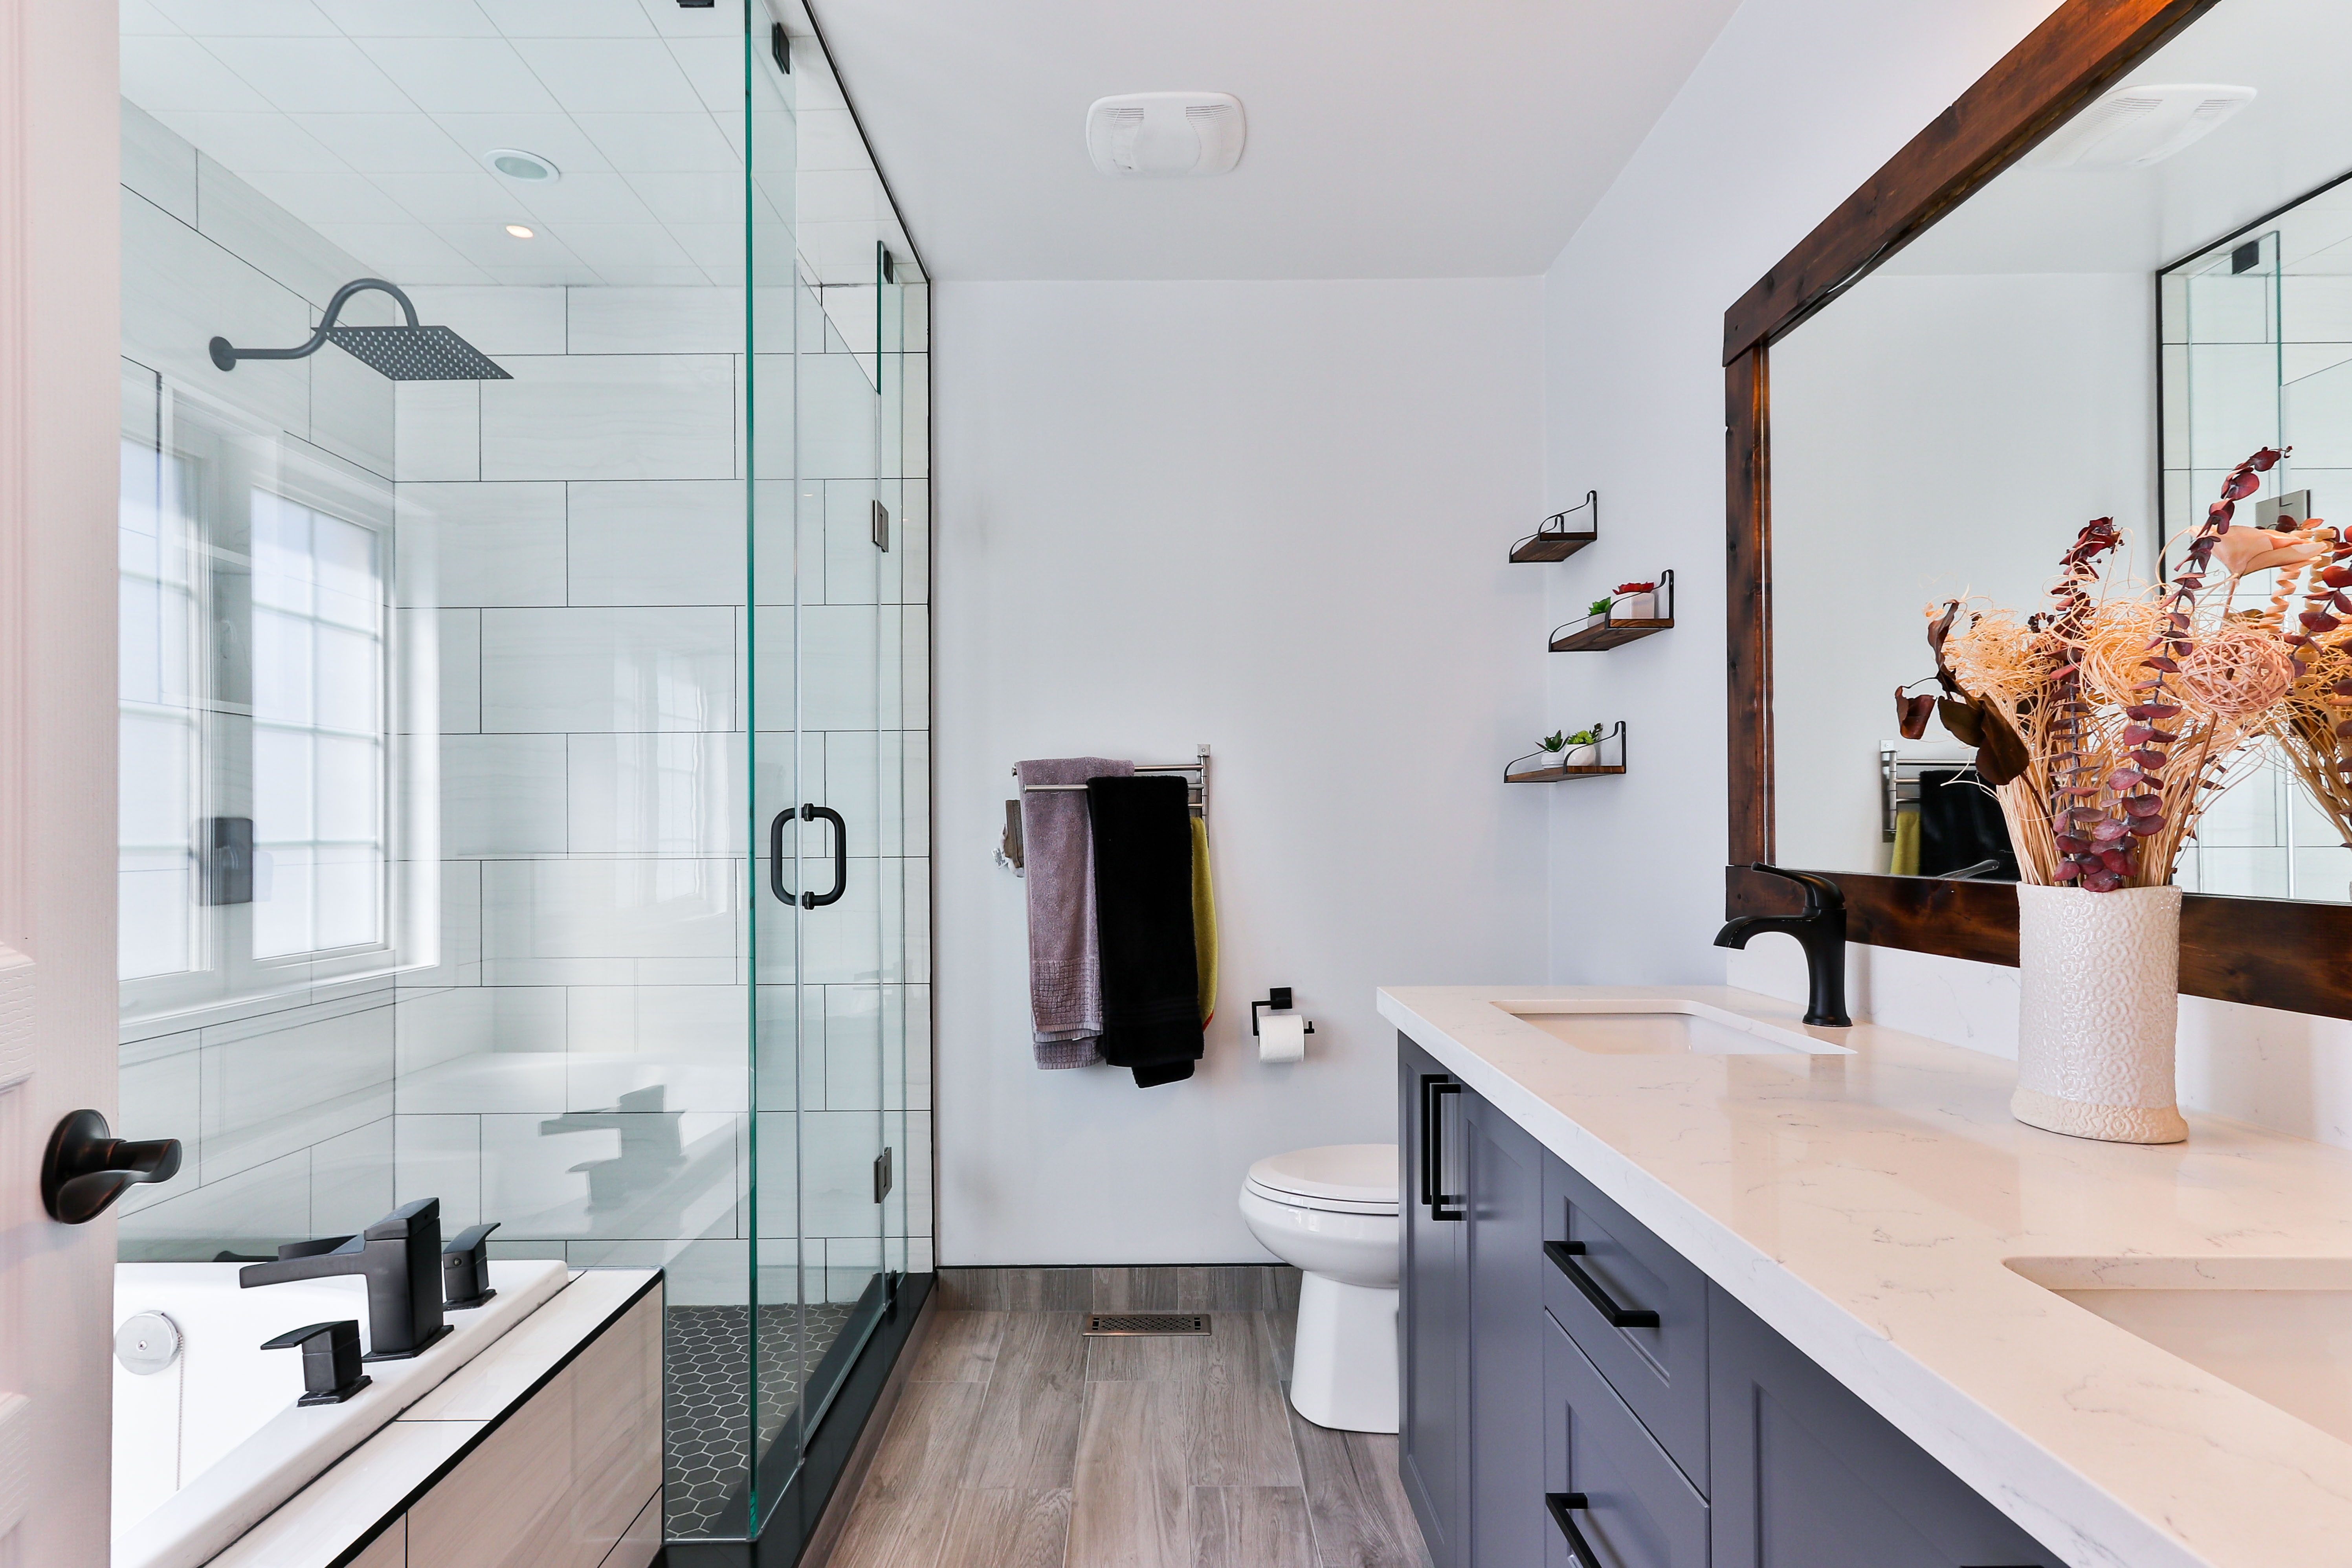 5 étapes pour nettoyer votre salle de bain